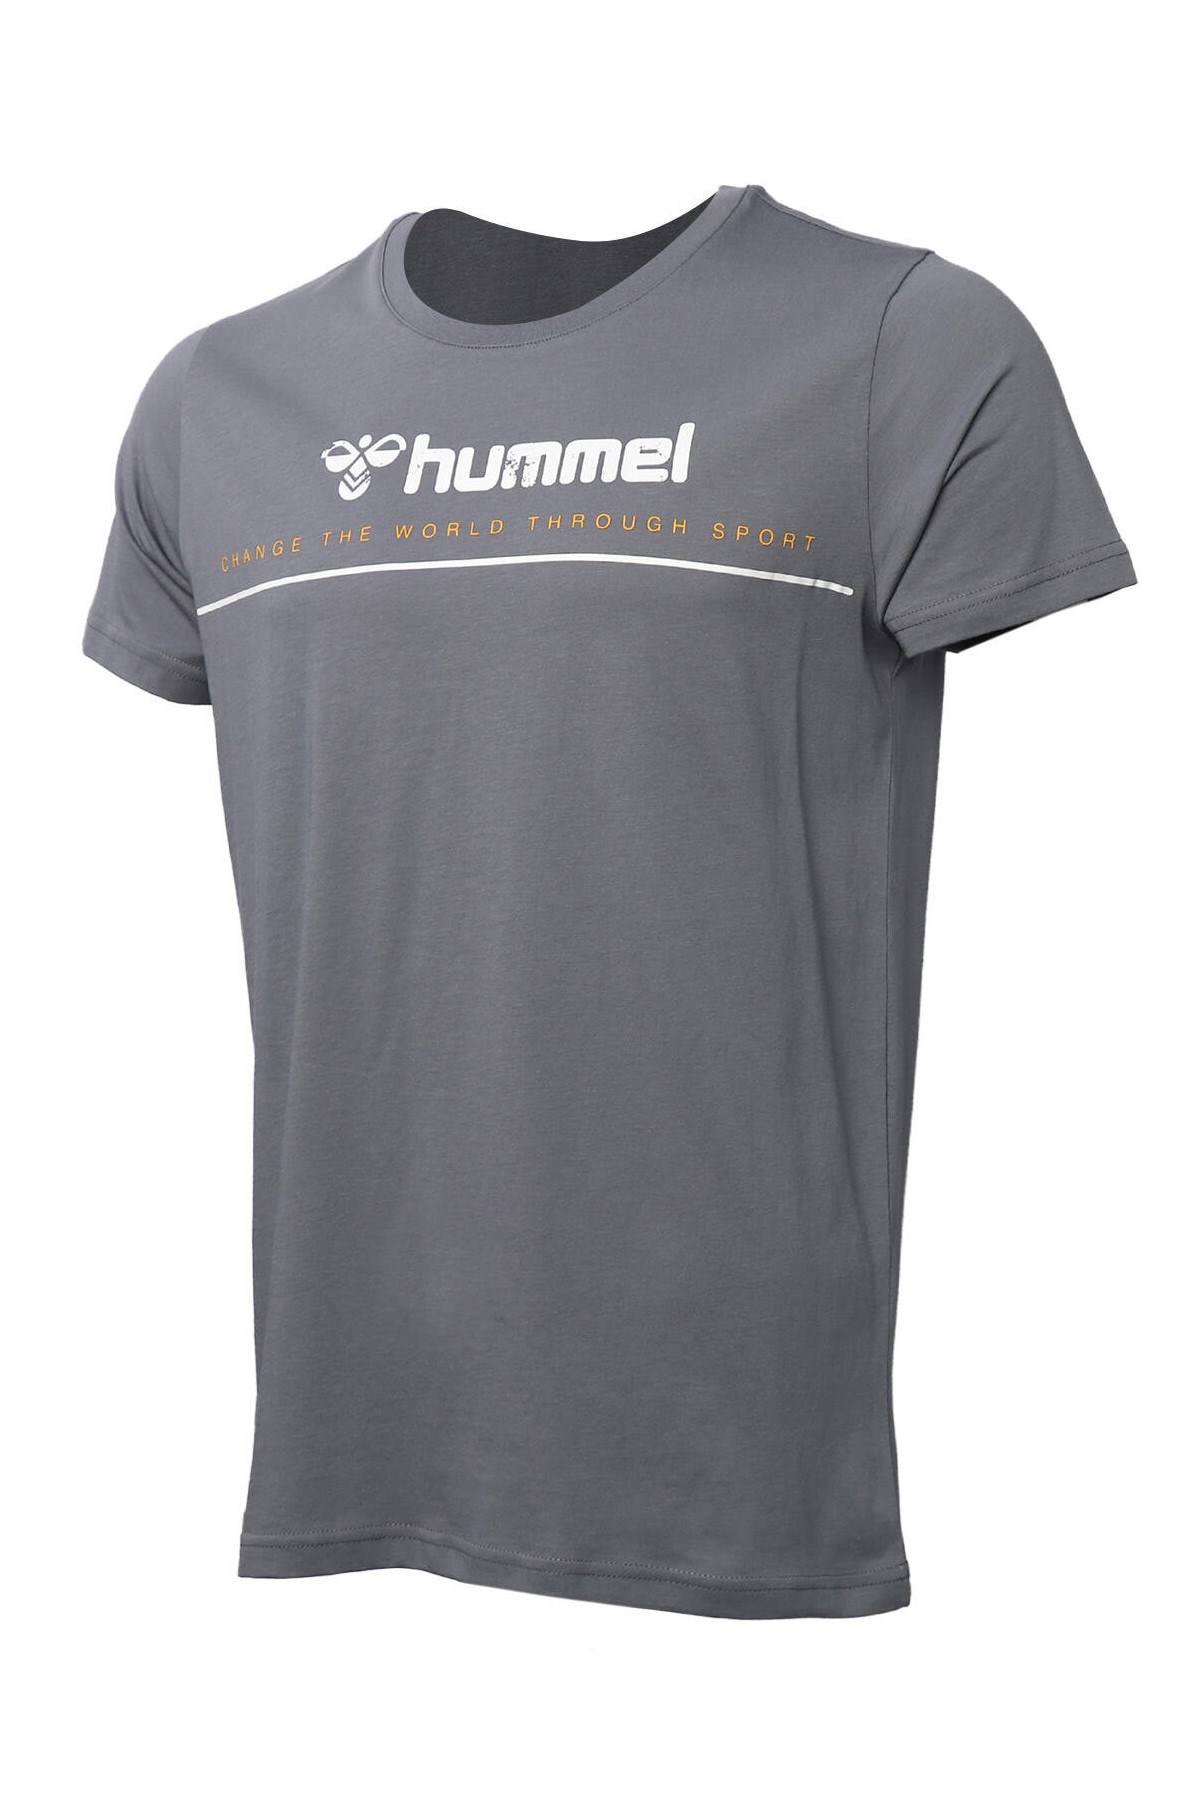 Hummel Erkek T-Shirt 911515-1320 Quıet Shade